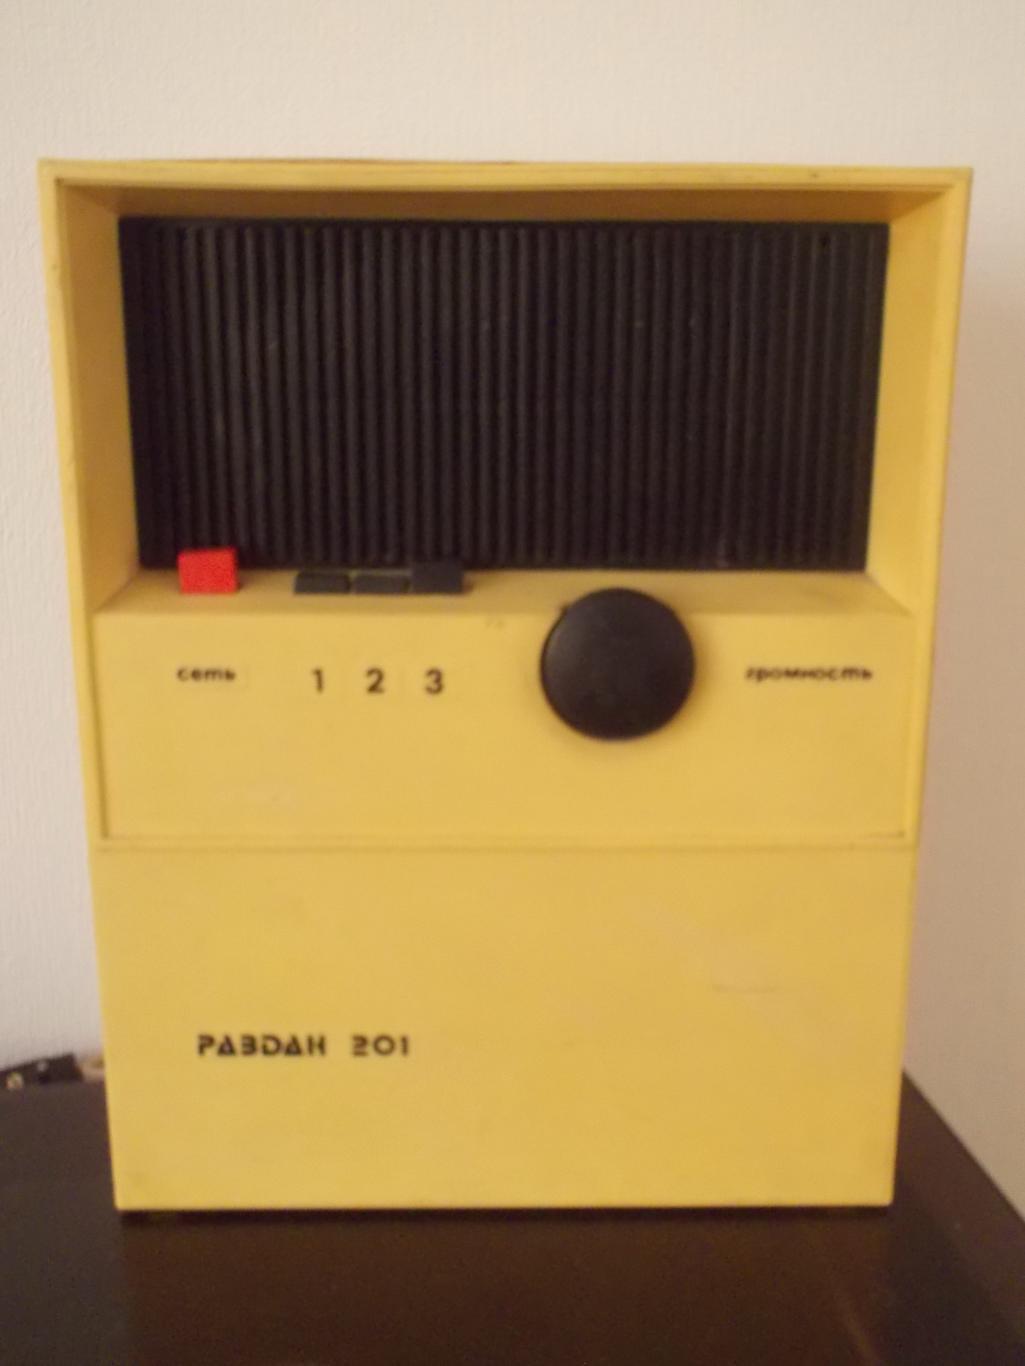 ТРехпрограммный радиоприемник Раздан, 1982 год.